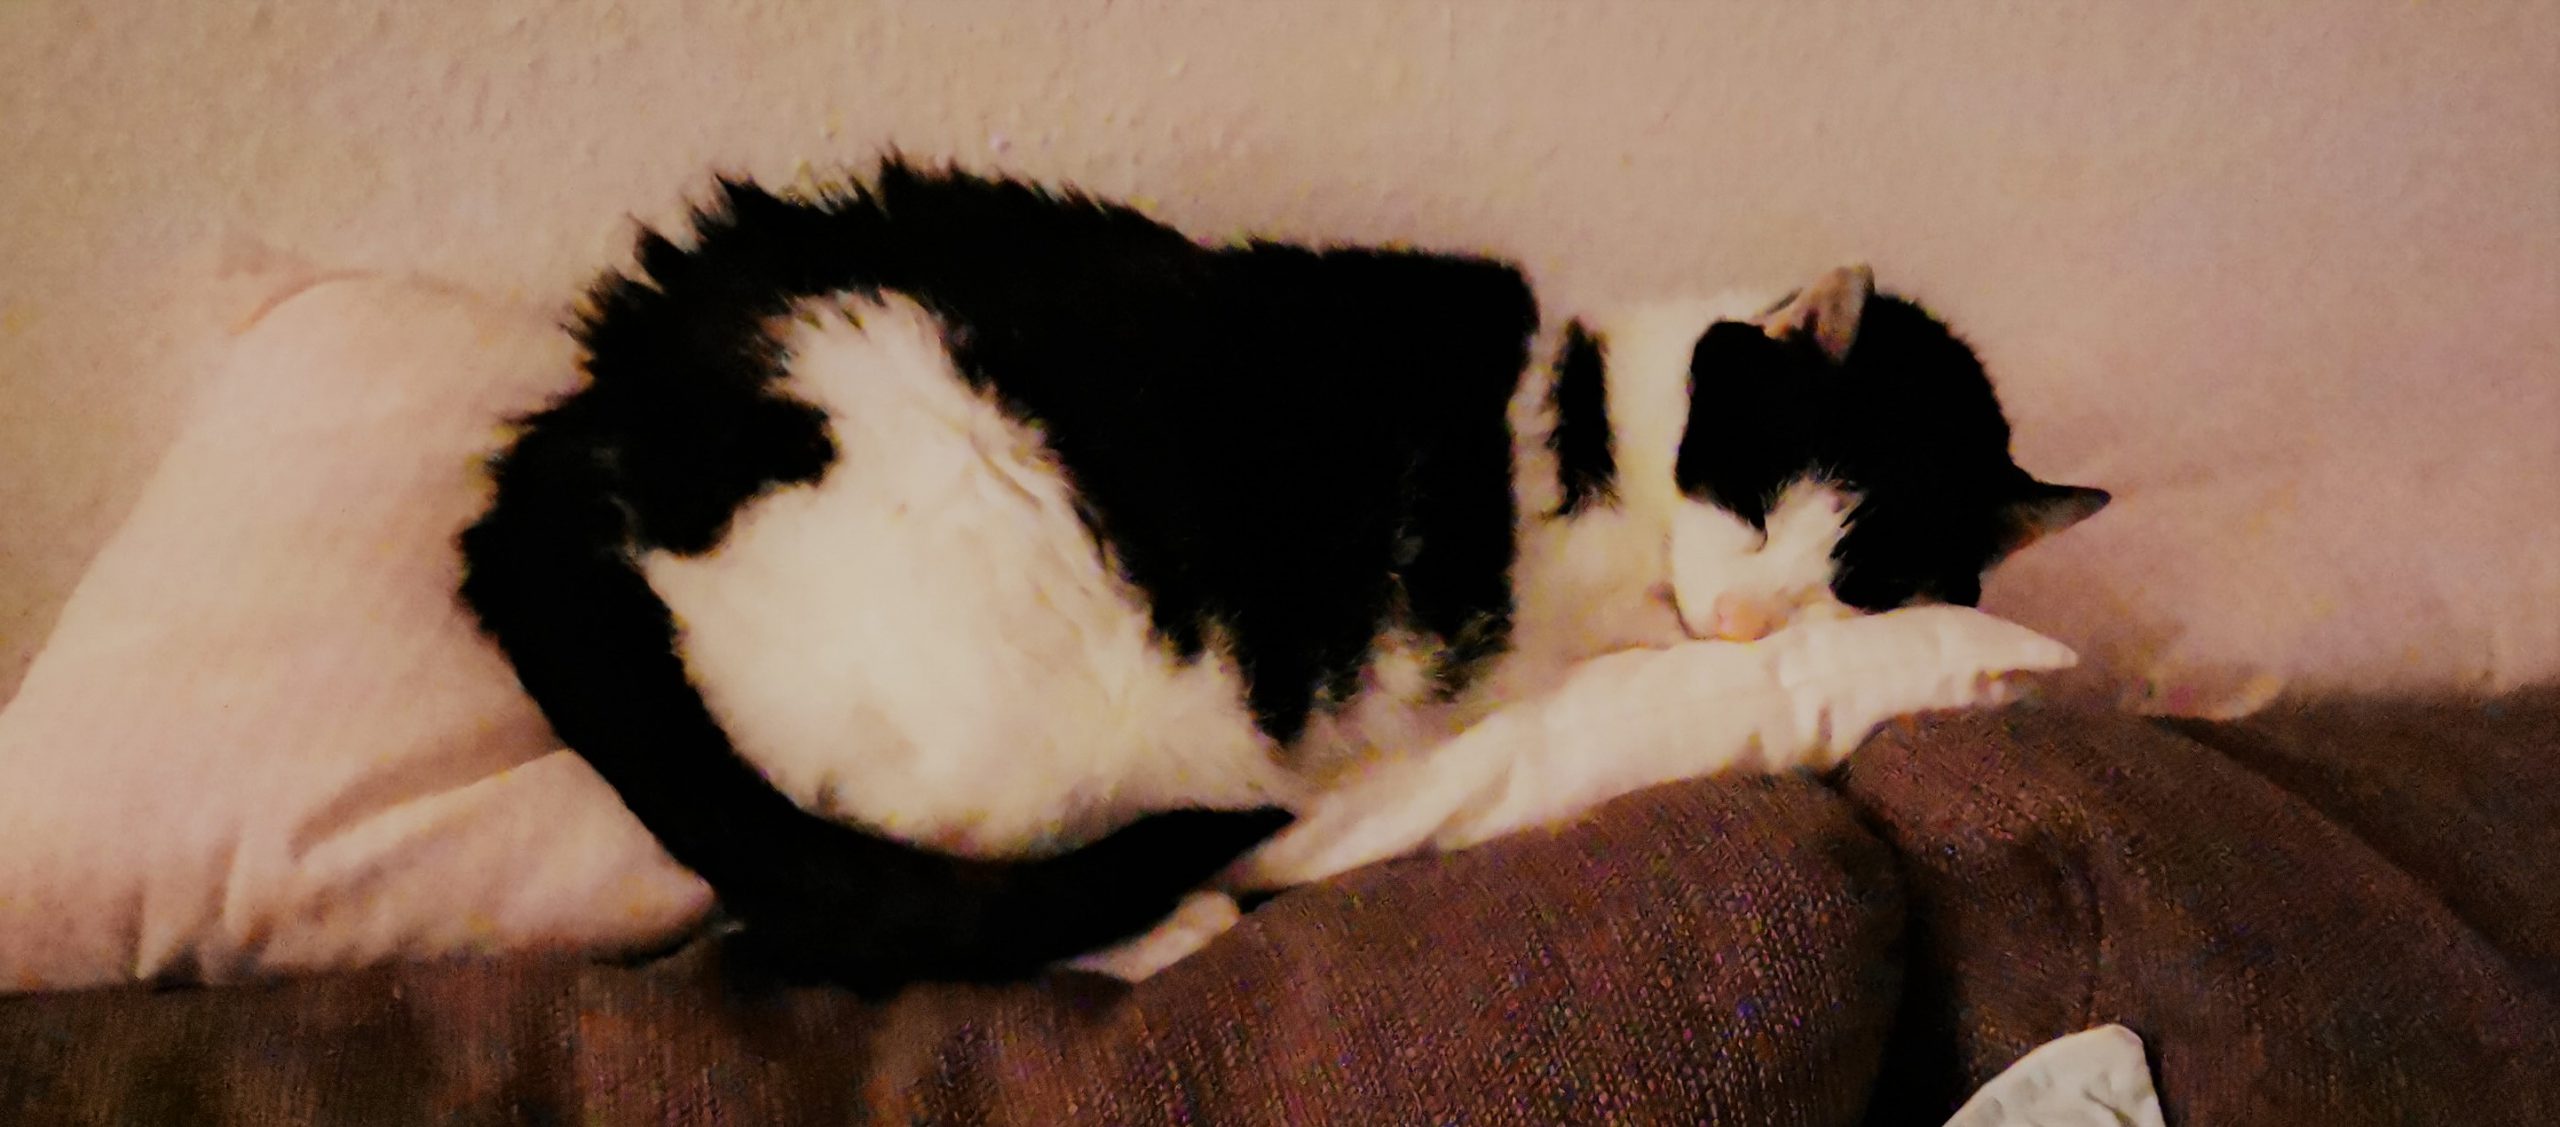 Neues Zuhause – Katzenseniorin Melina grüßt nach 3 Jahren